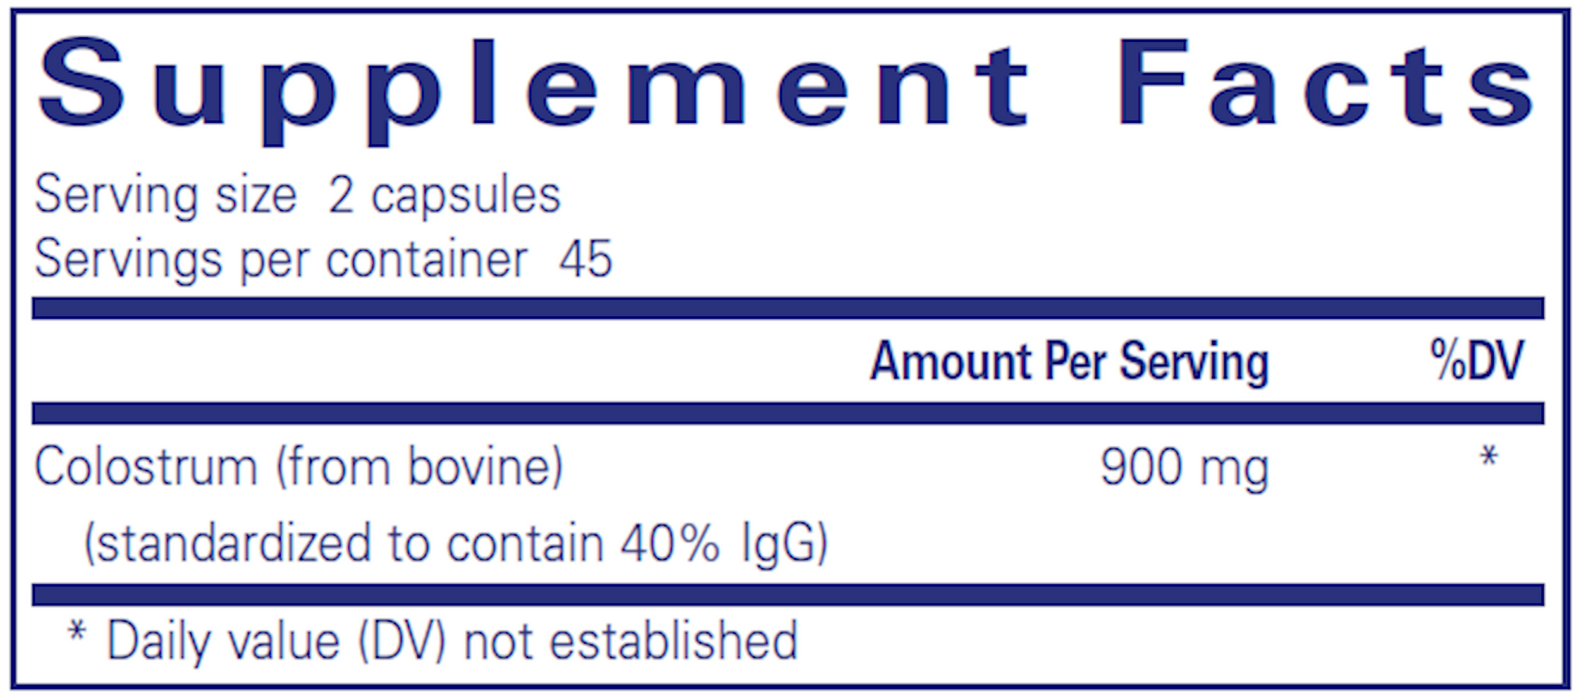 Pure Encapsulations Colostrum 40% IgG 450 mg